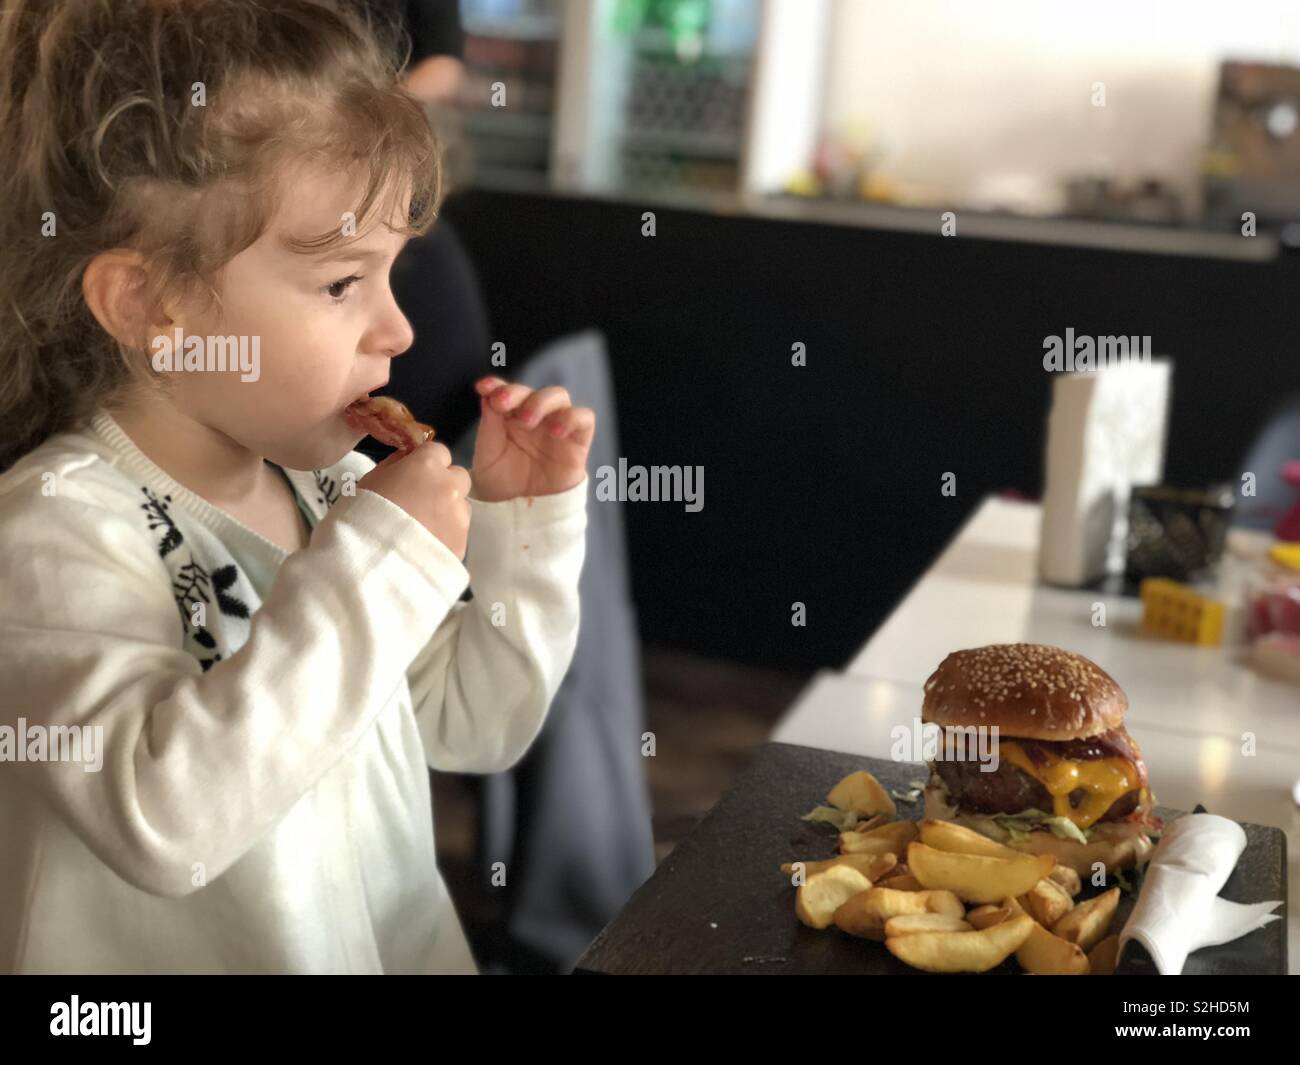 Children eating burger Stock Photo